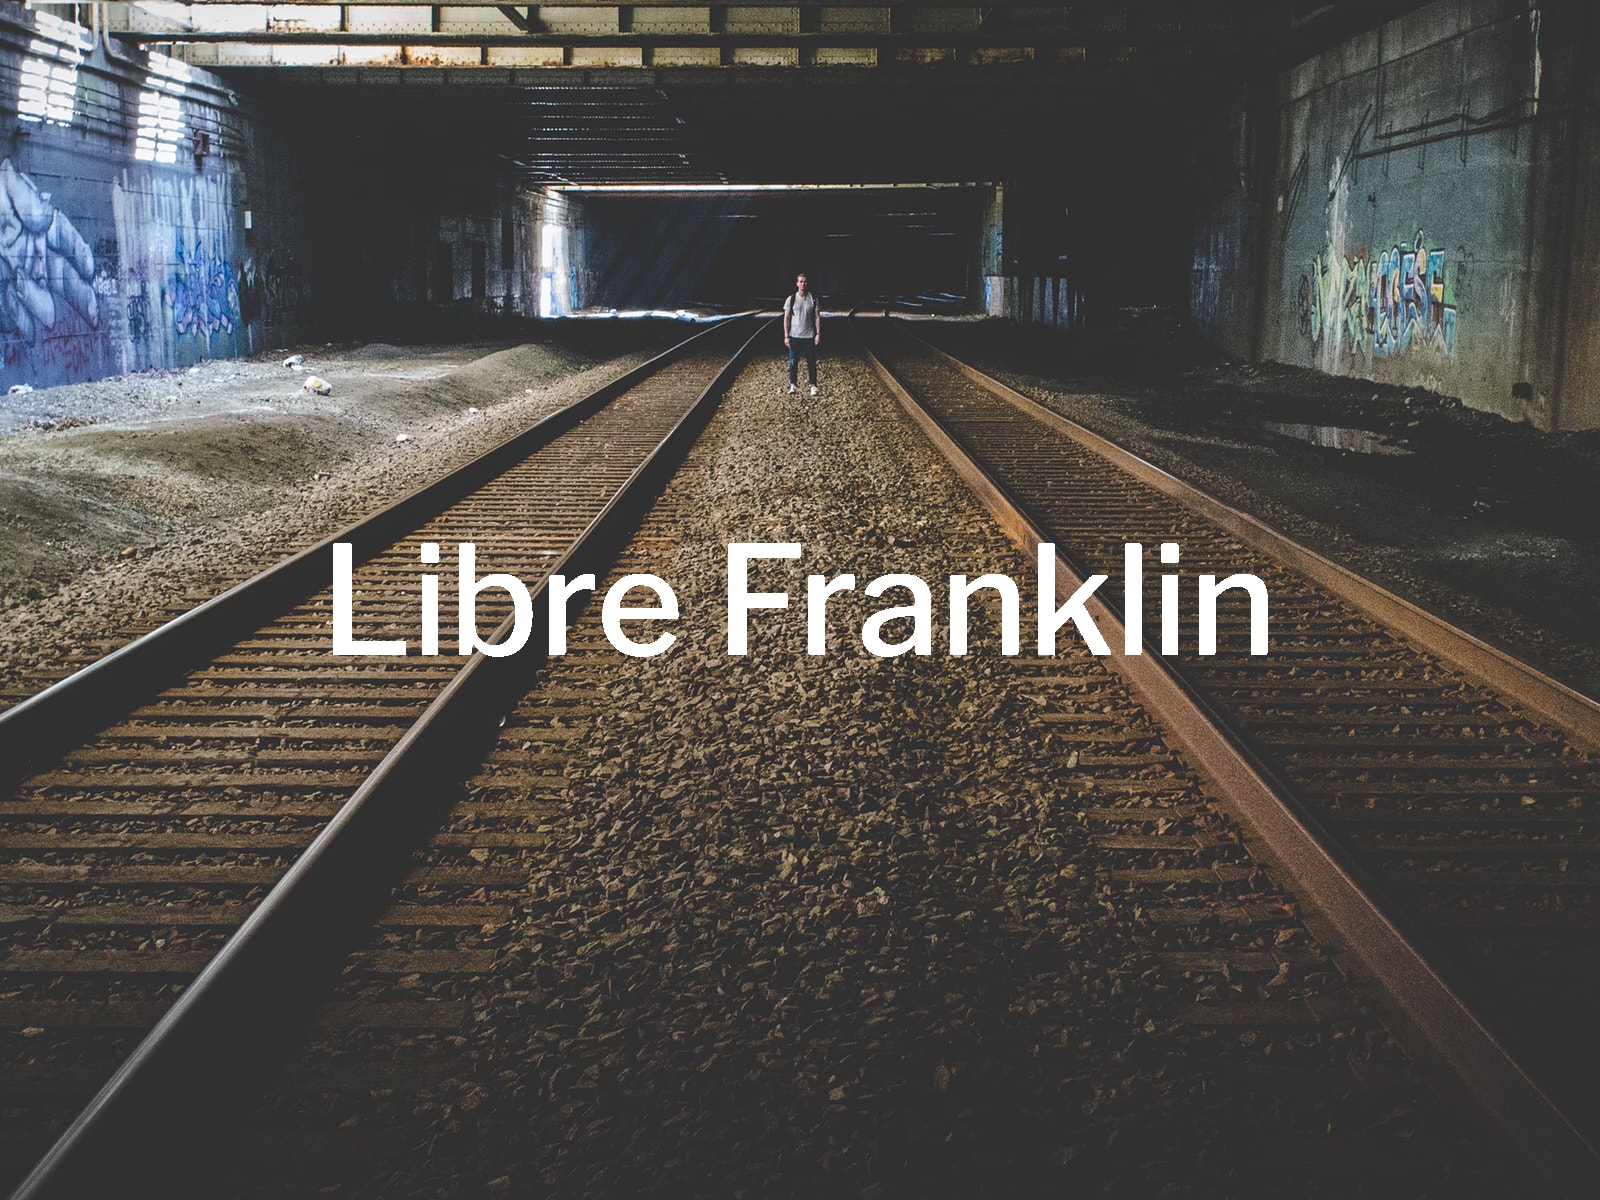 Libre Franklin Font